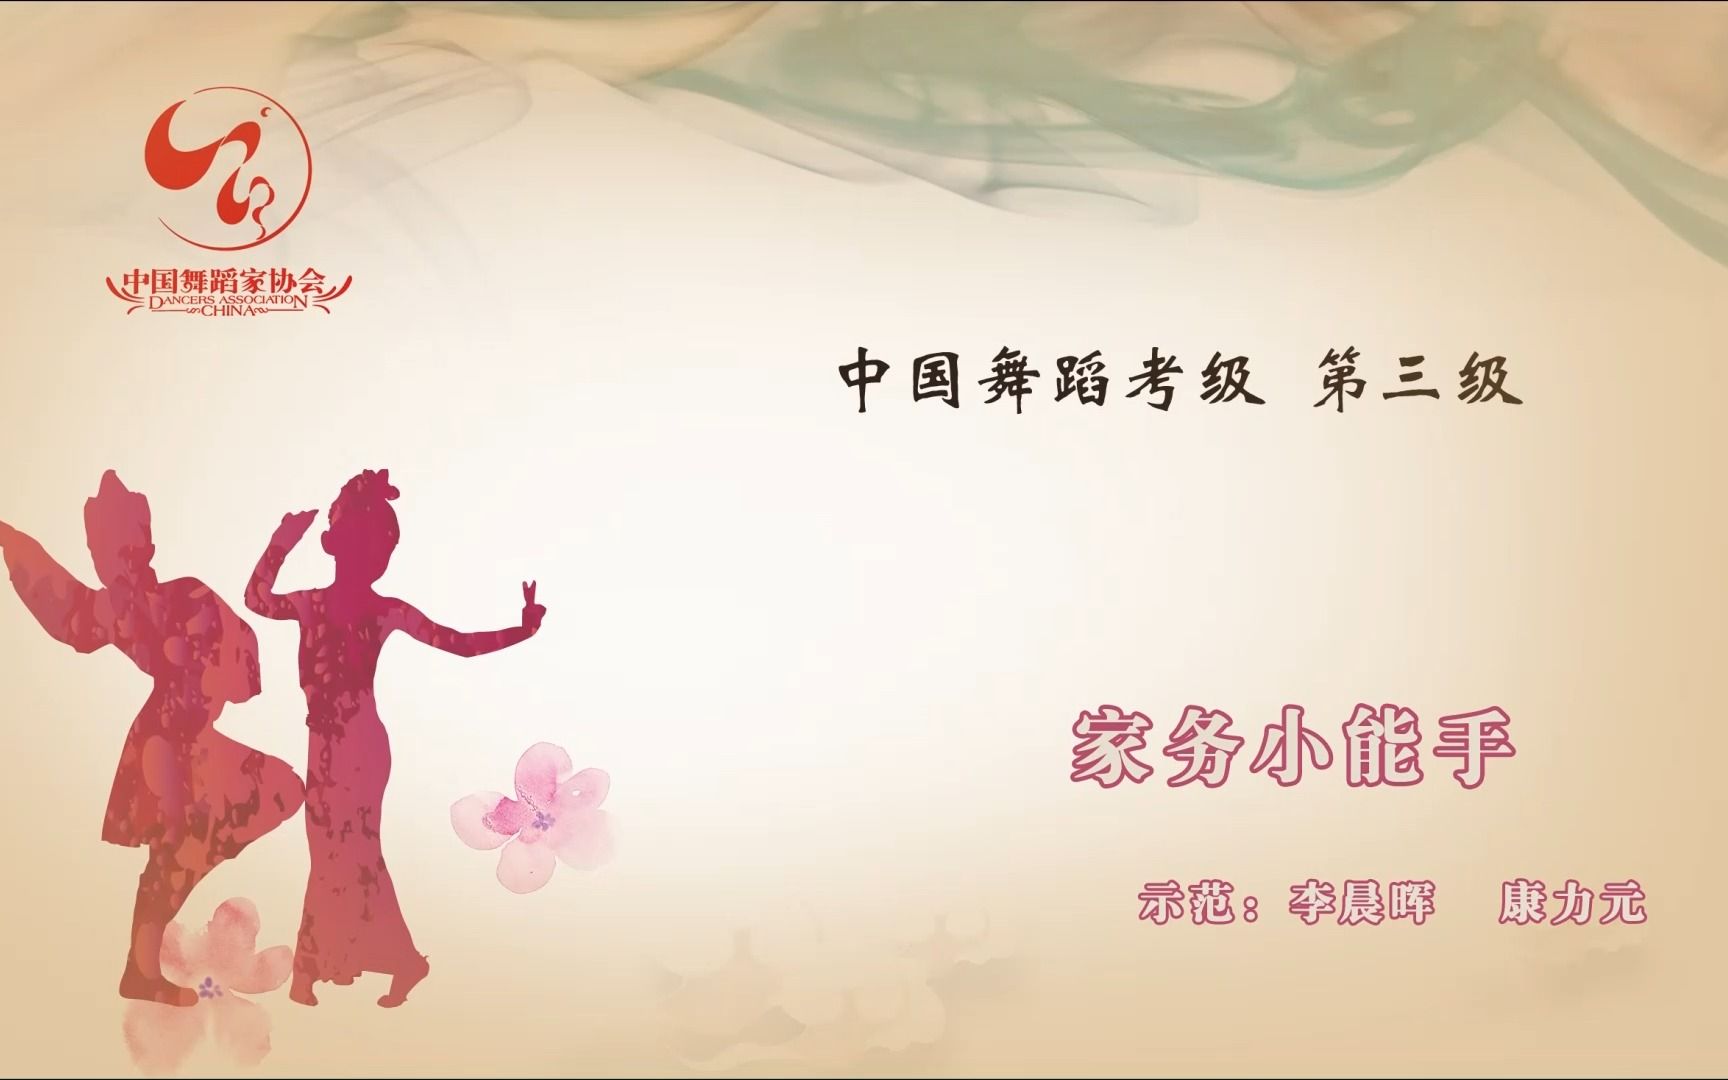 中国舞蹈家协会《中国舞考级》第三级《家务小能手》